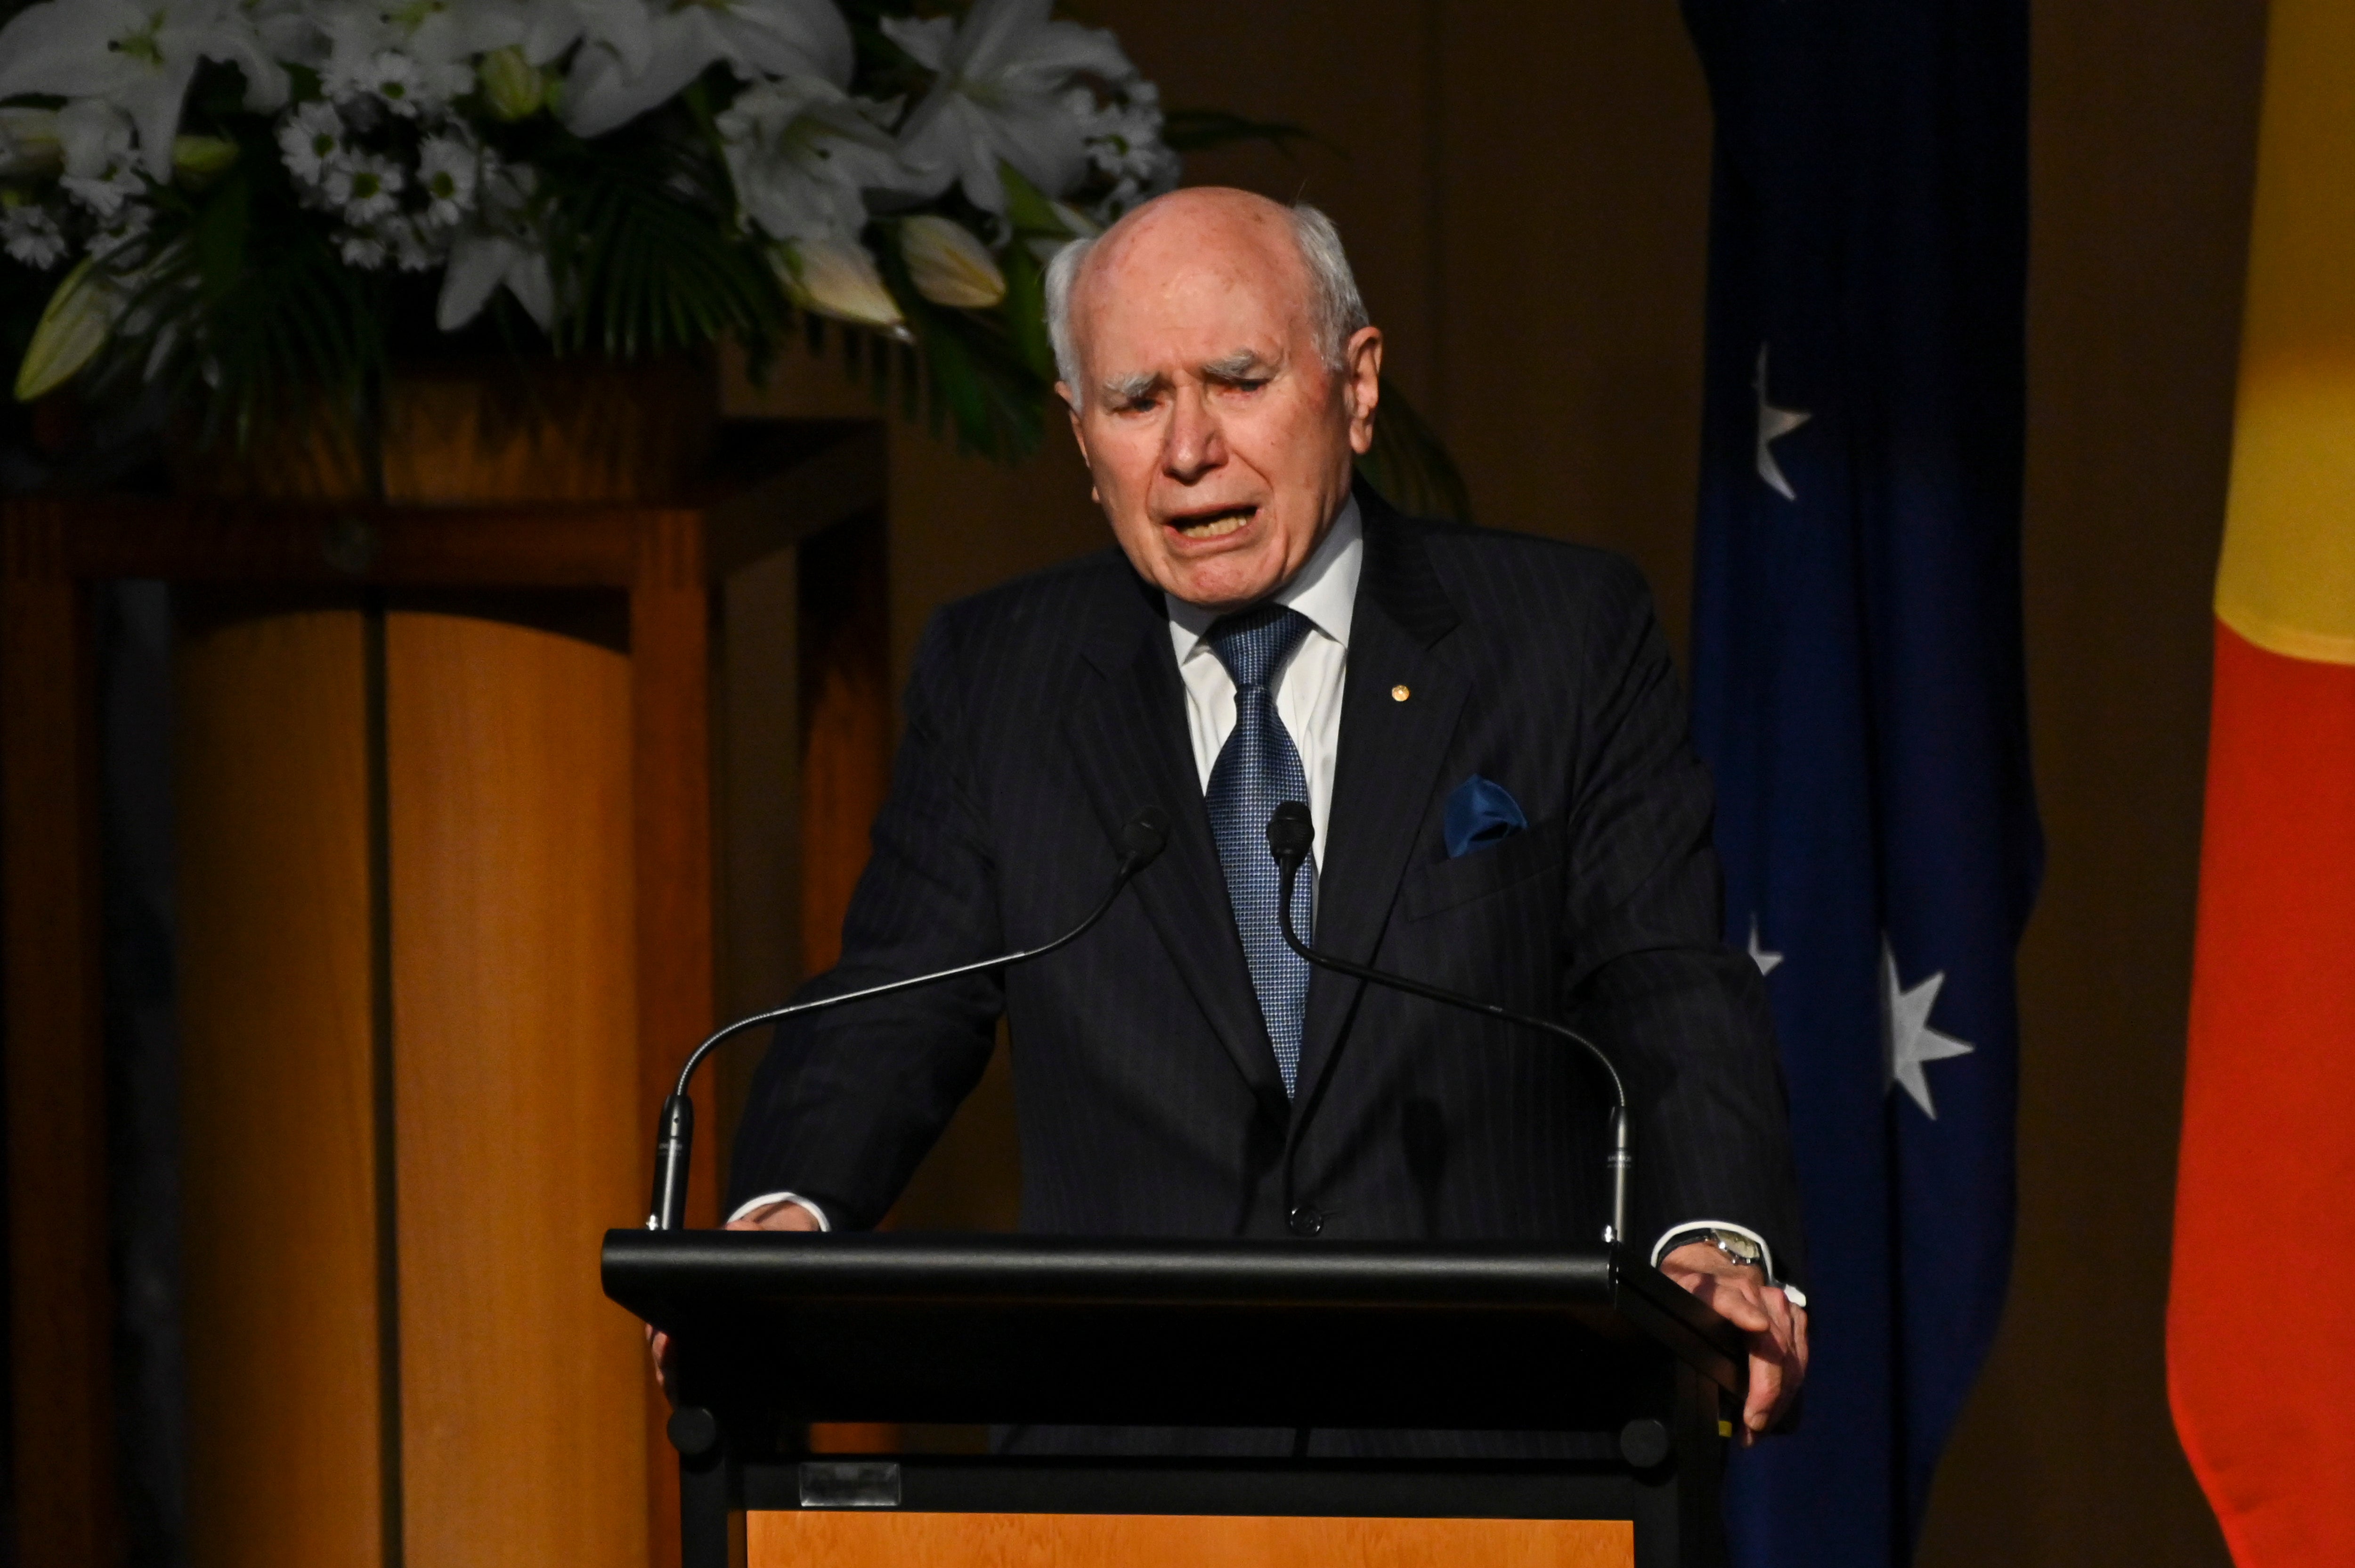 Former prime minister of Australia John Howard